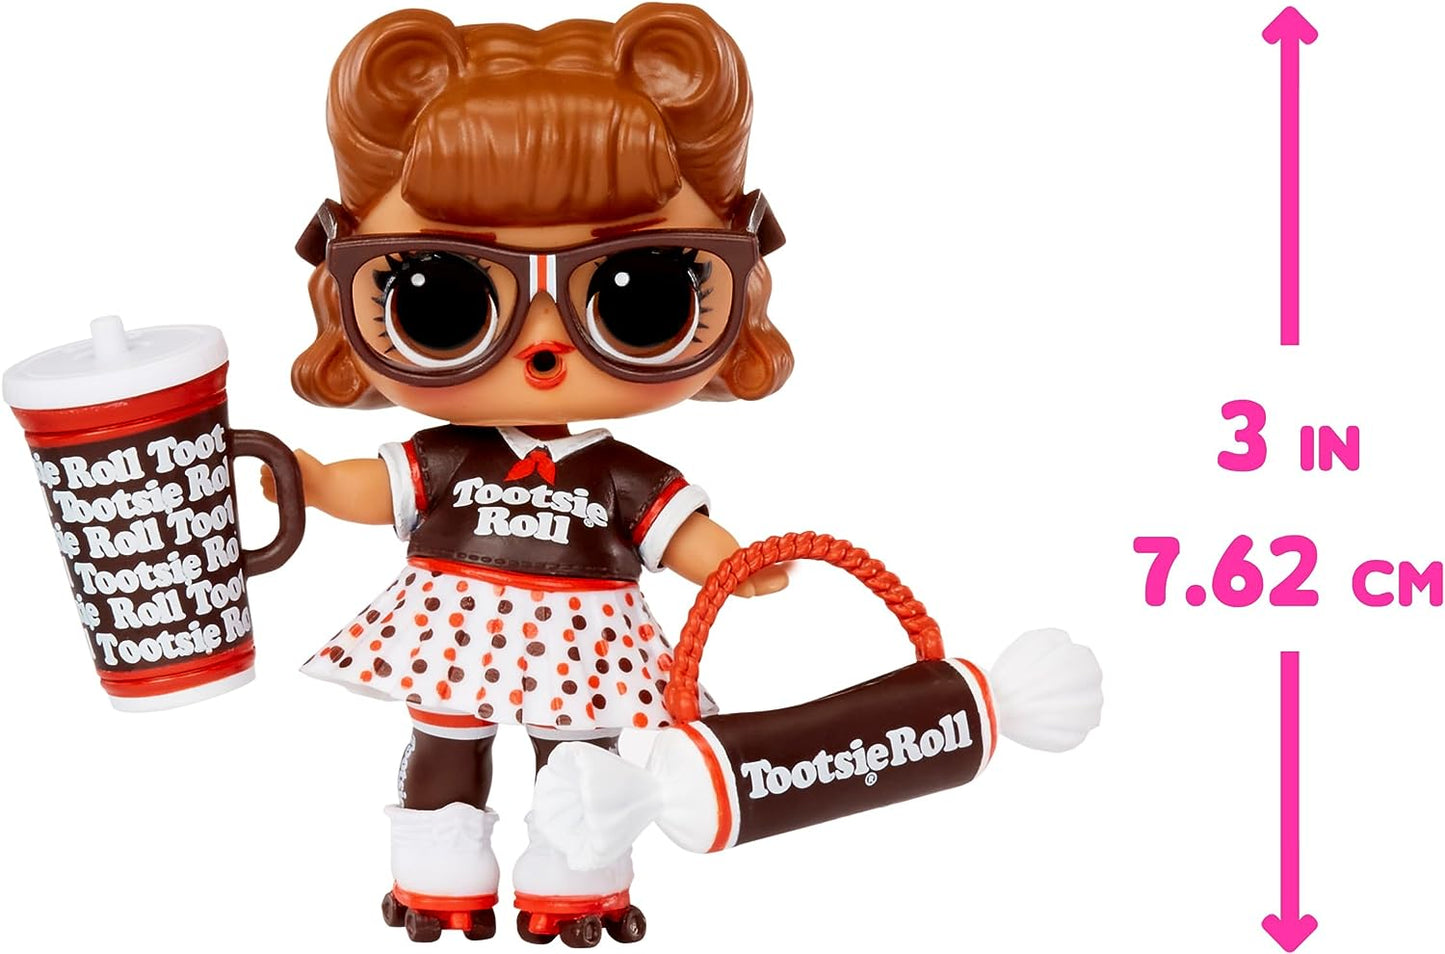 L.O.L. Surprise! Loves Mini Sweets Deluxe Series 3 - TOOTSIE - Inclui 3 bonecos com tema de doces de edição limitada, acessórios divertidos e surpresa de água - Bonecos colecionáveis adequados para crianças de 4 anos ou mais